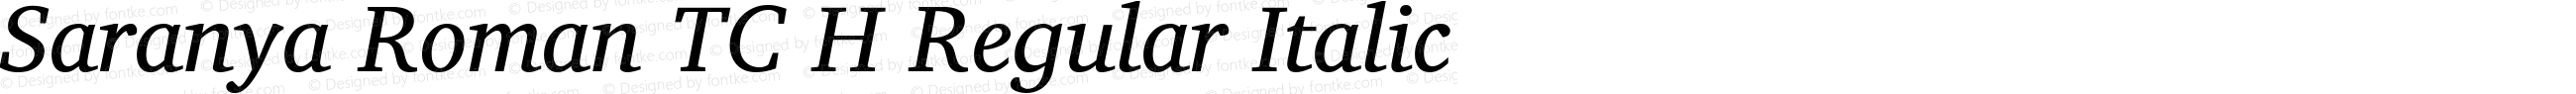 Saranya Roman TC H Regular Italic